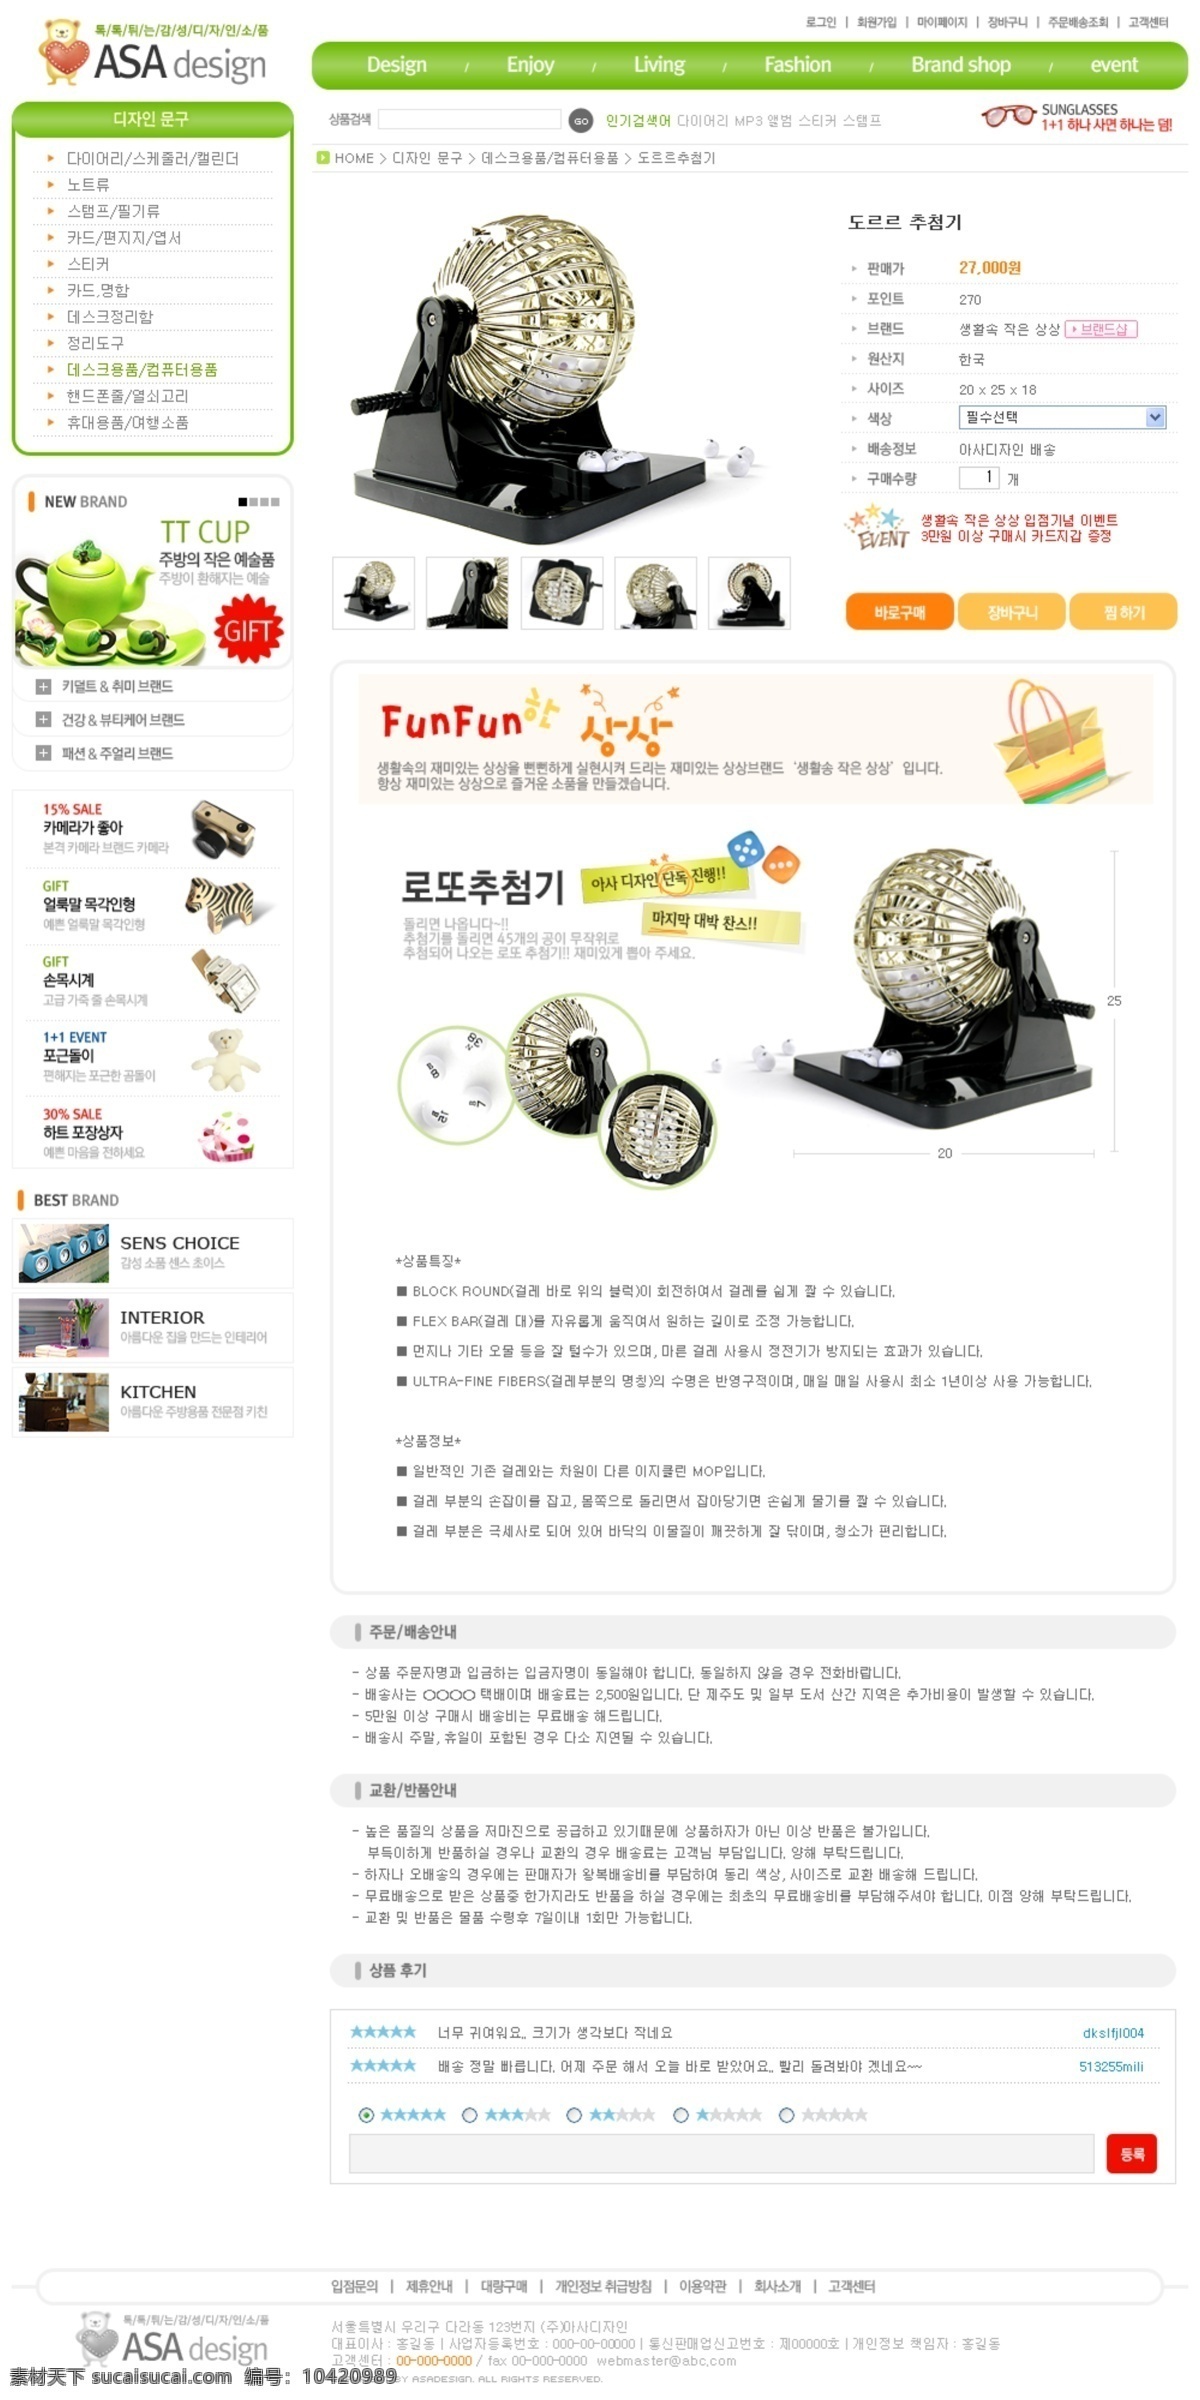 韩国模板 韩国网页模板 皮包 体育用品 玩具 网页模板 文具 源文件 销售网站 整站模板 日韩模板 日用品网站 psd源文件